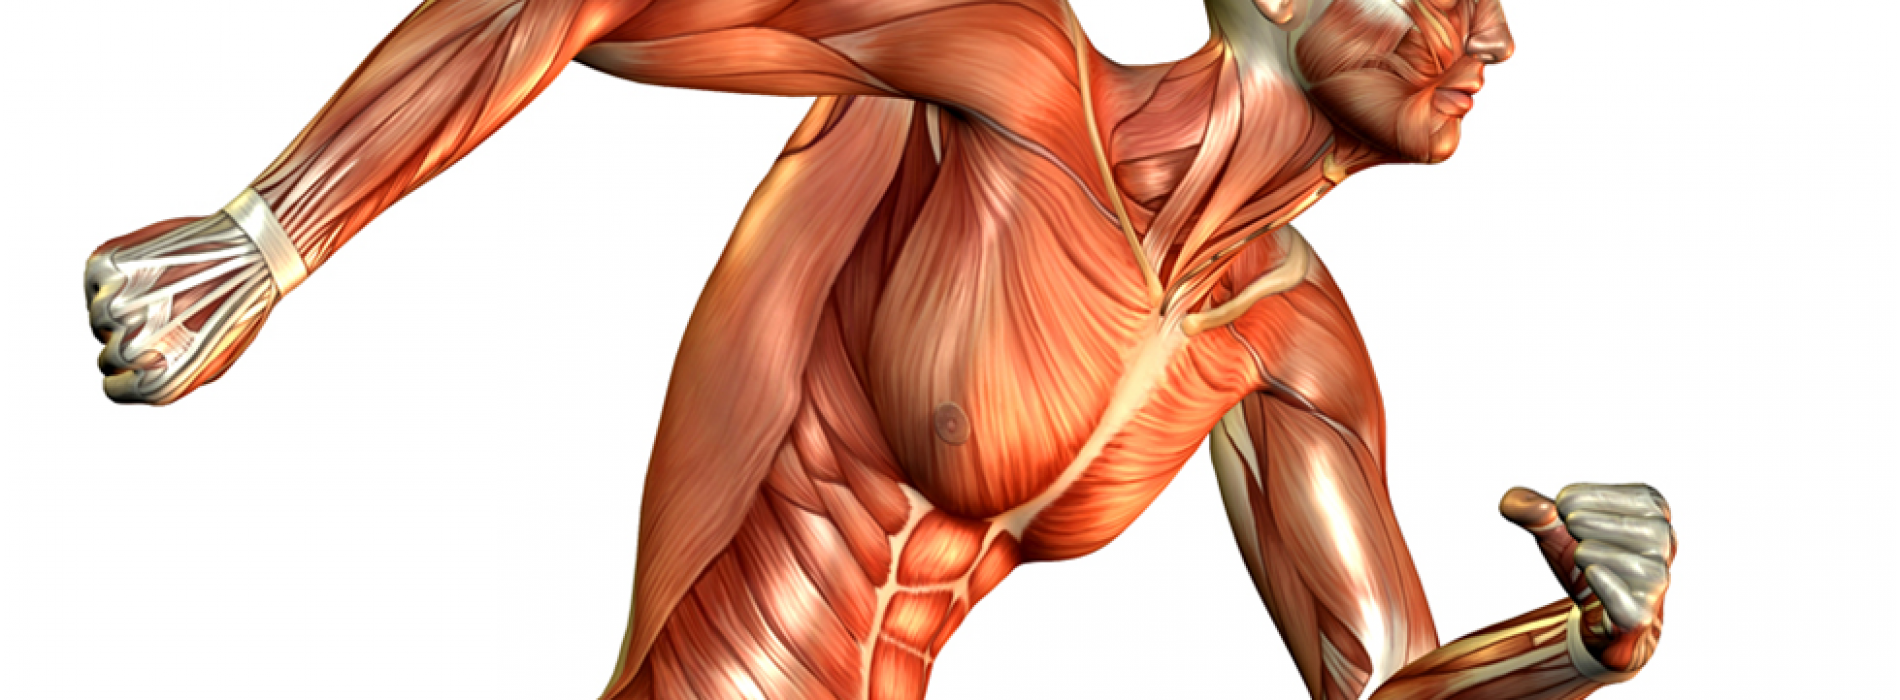 اثرات تمرینات محدودیت جریان خون (کاتسو) بر سیستم عضلانی